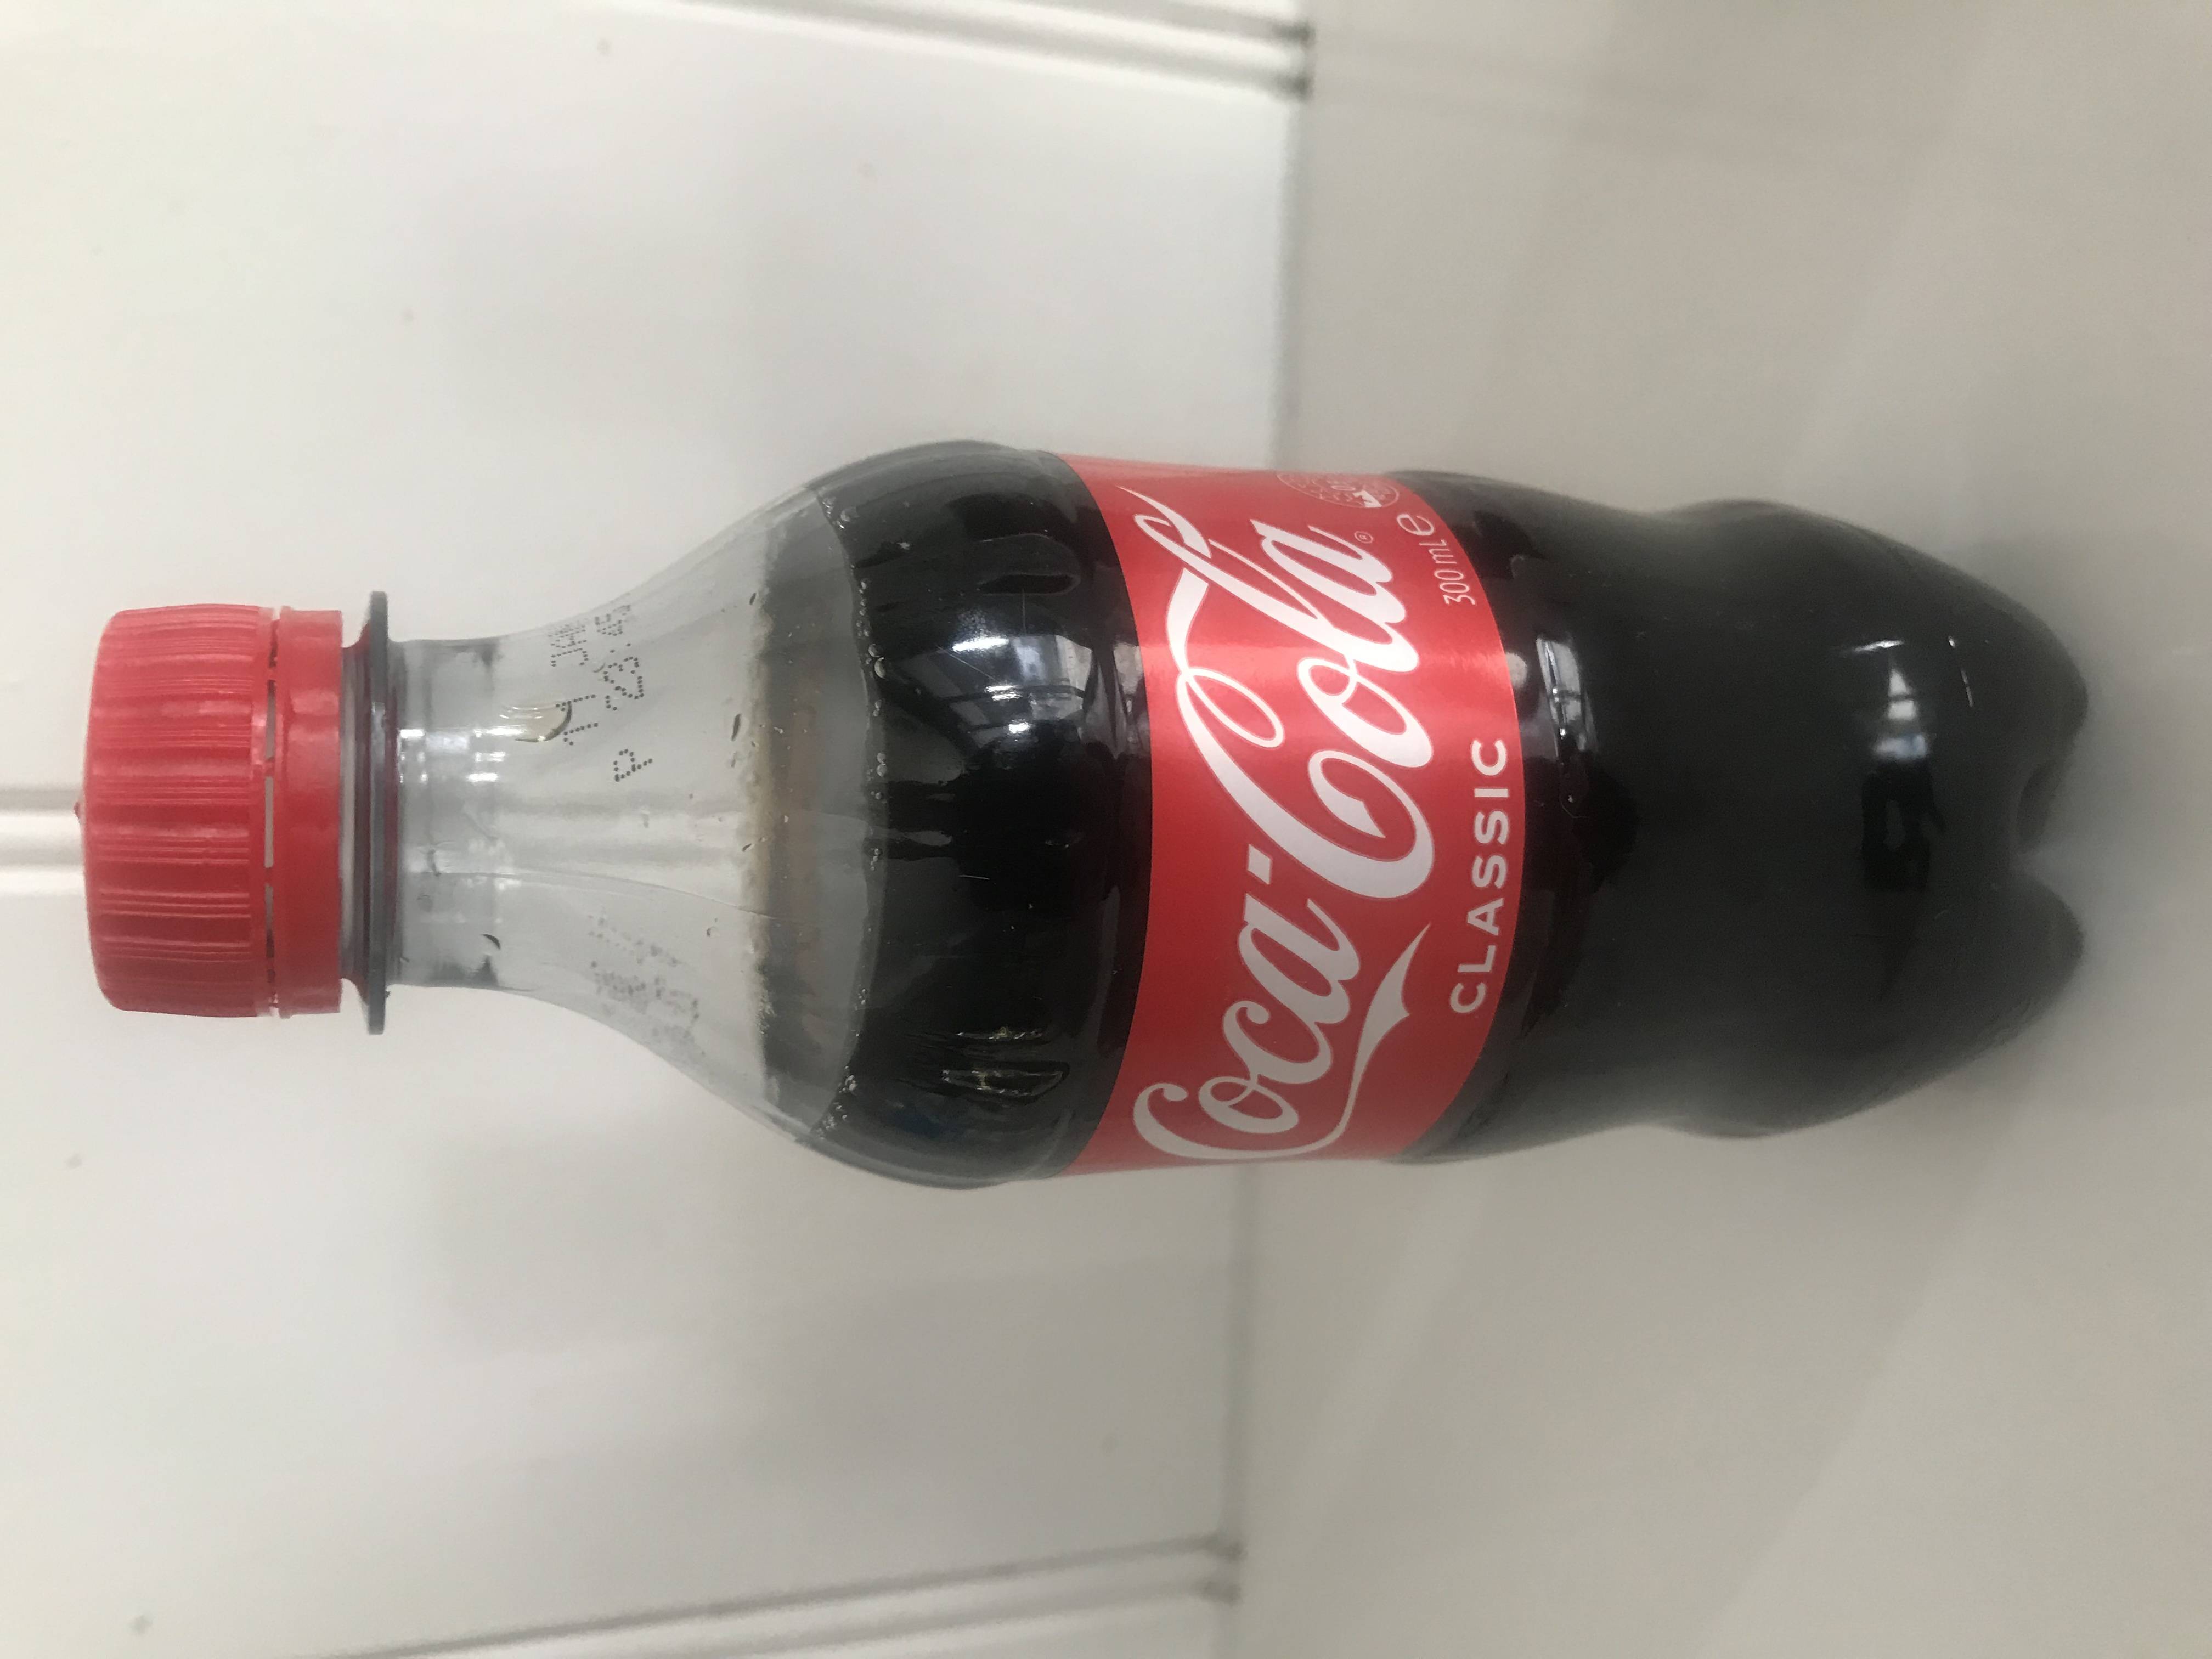 Coke Classic 300ml